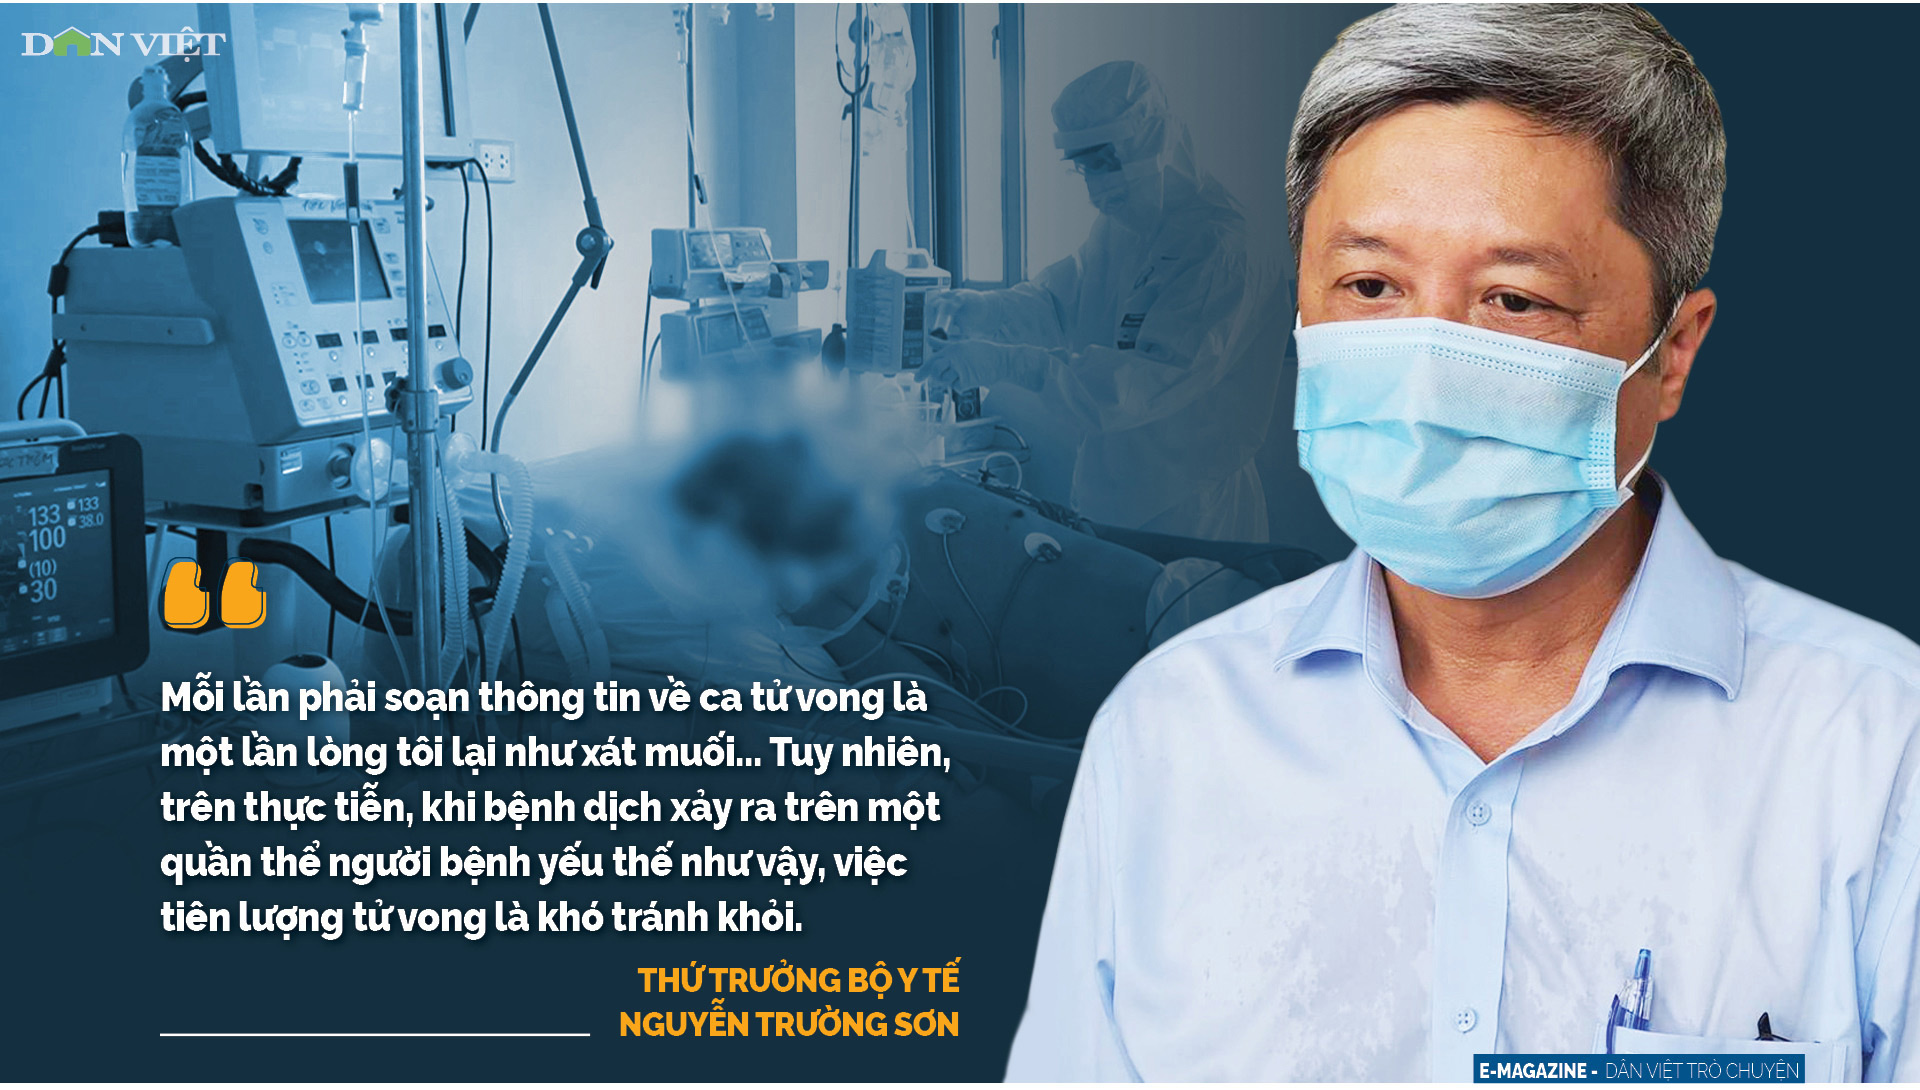 Thứ trưởng Bộ Y tế Nguyễn Trường Sơn: Lòng tôi như xát muối mỗi lần soạn thông tin bệnh nhân tử vong - Ảnh 8.